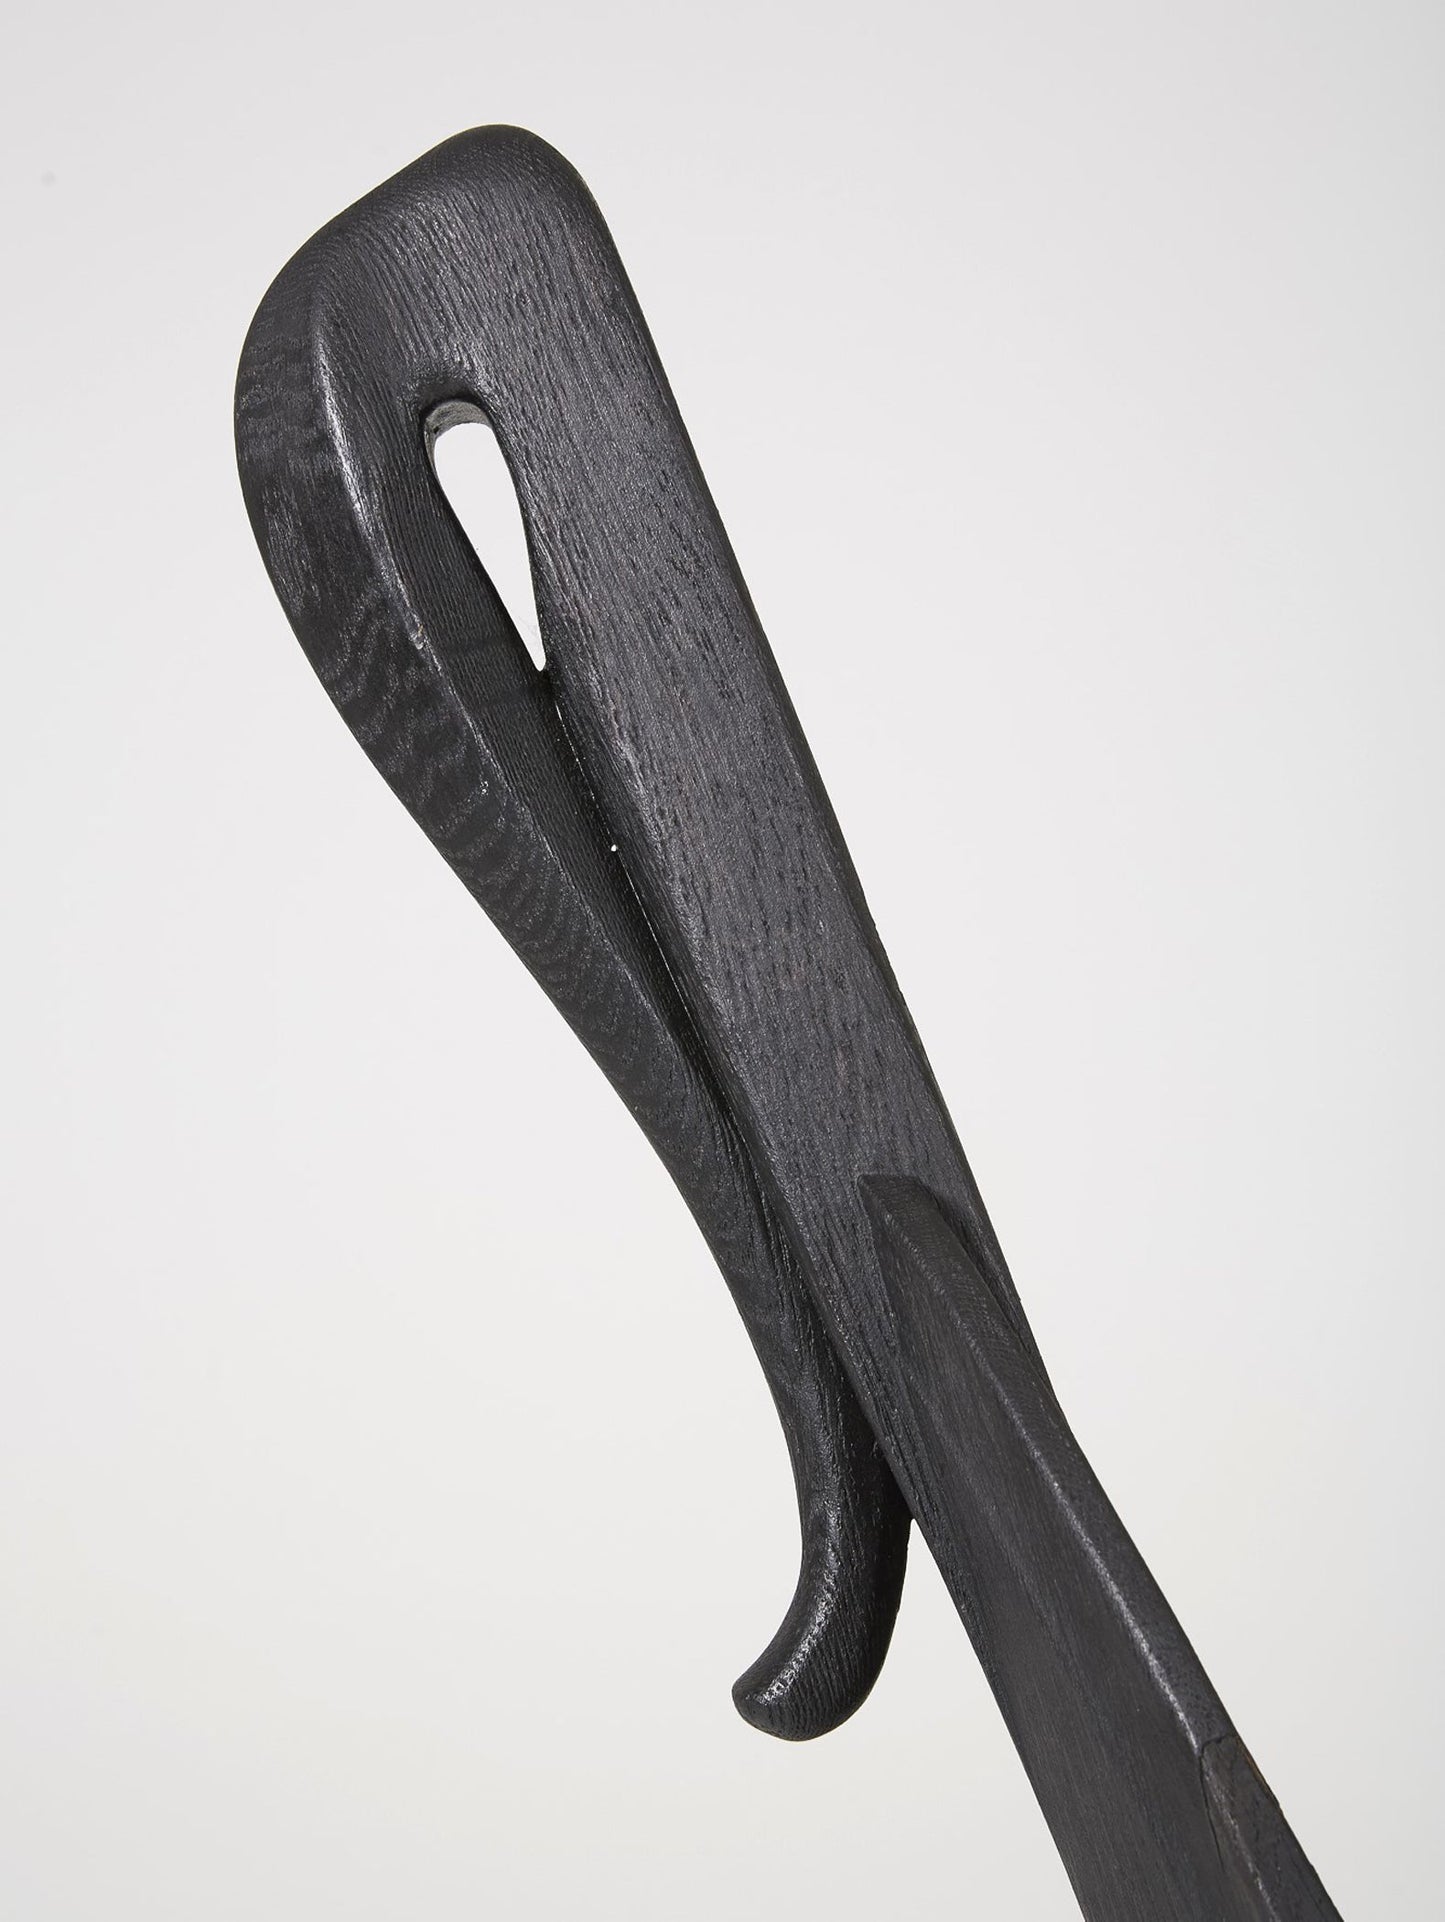 Chaise trône en bois massif teinté noir du designer Rudi Muth, 1987. Elle est signée et datée à la main sous l’assise. Bon état, légères traces d’usure.